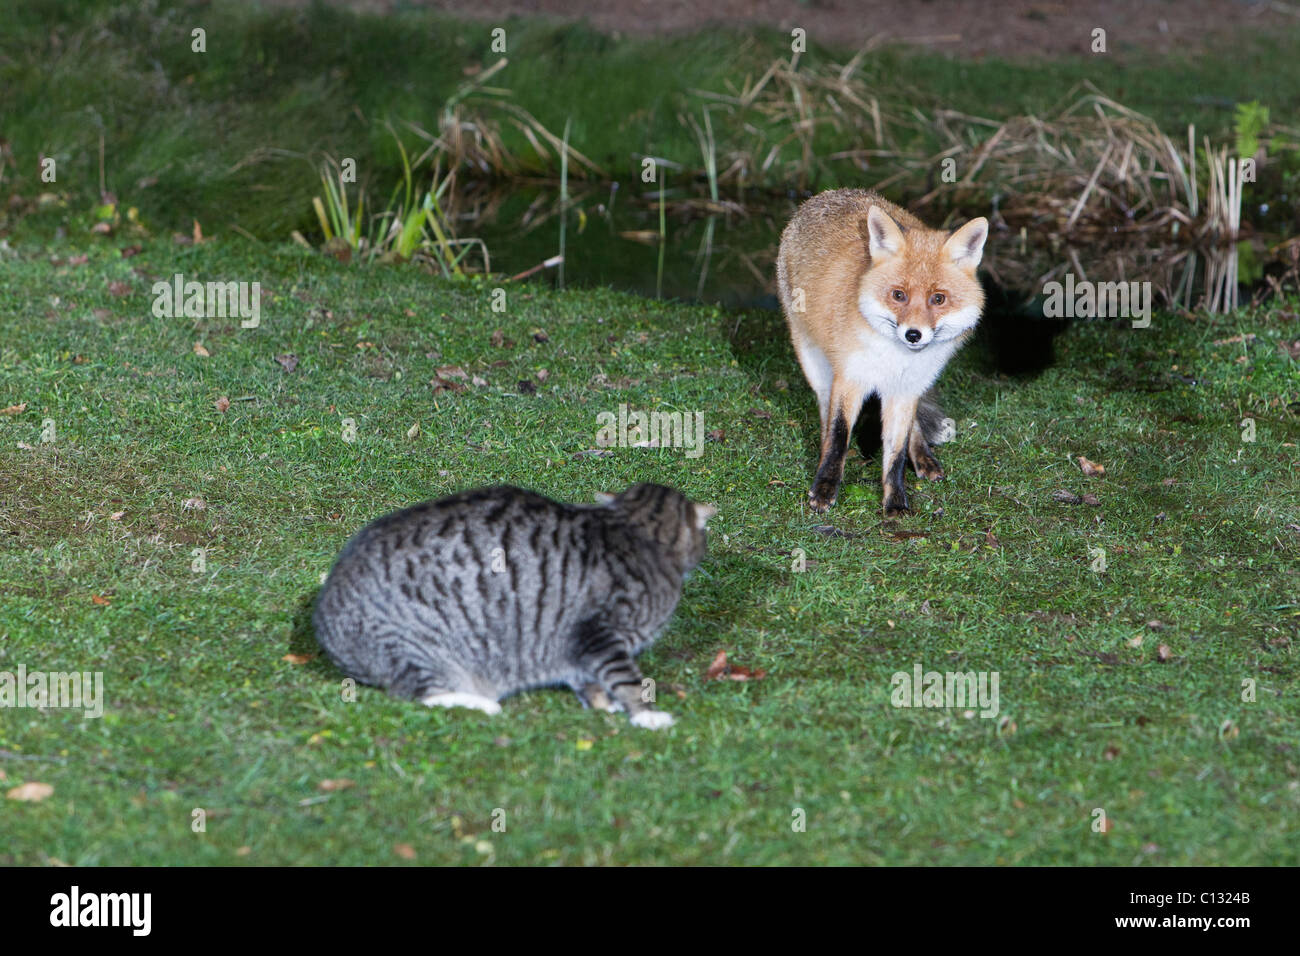 Unión el zorro (Vulpes vulpes) y el gato doméstico, en el jardín Foto de stock